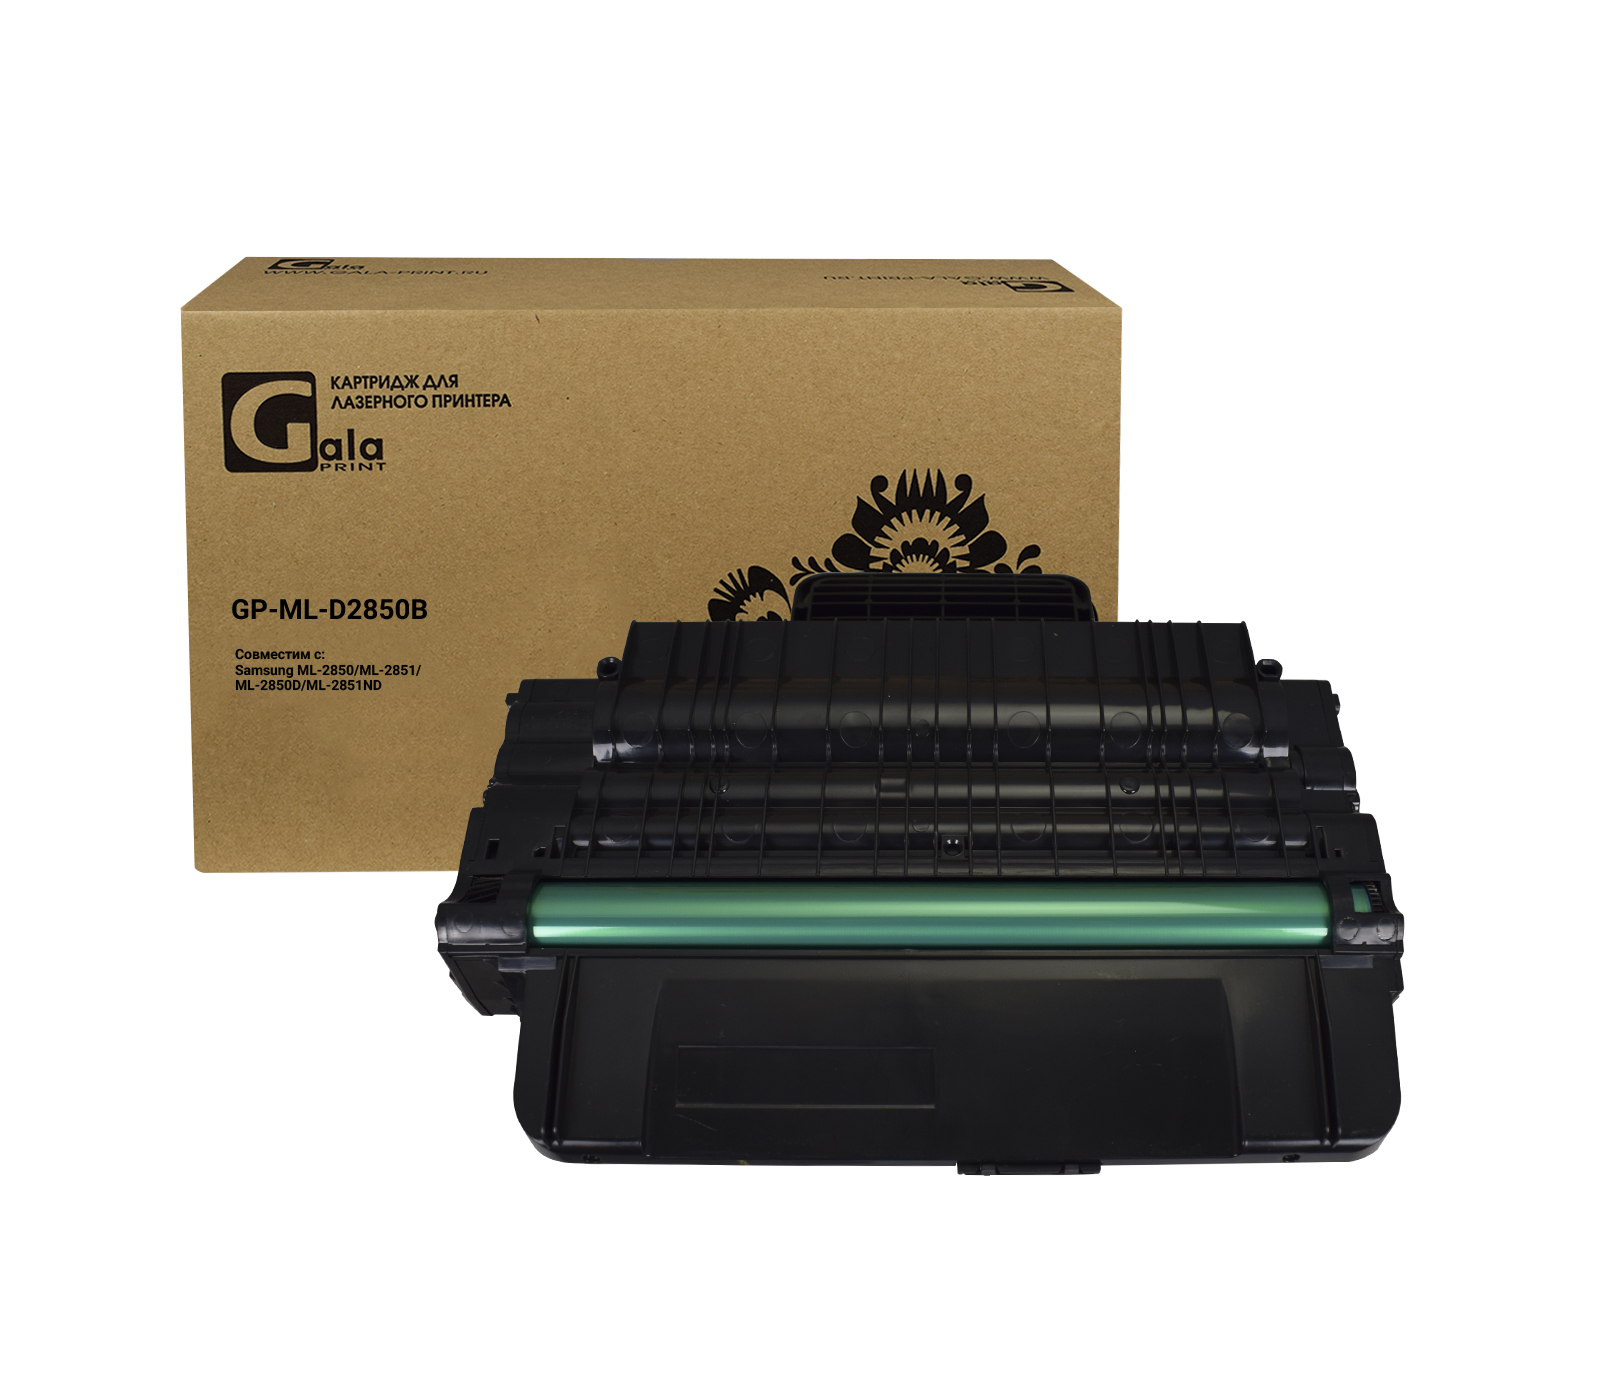 Картридж GP-ML-D2850B/XIL для принтеров Samsung ML-2850D/2851ND/2851DK 5000 копий GalaPrint